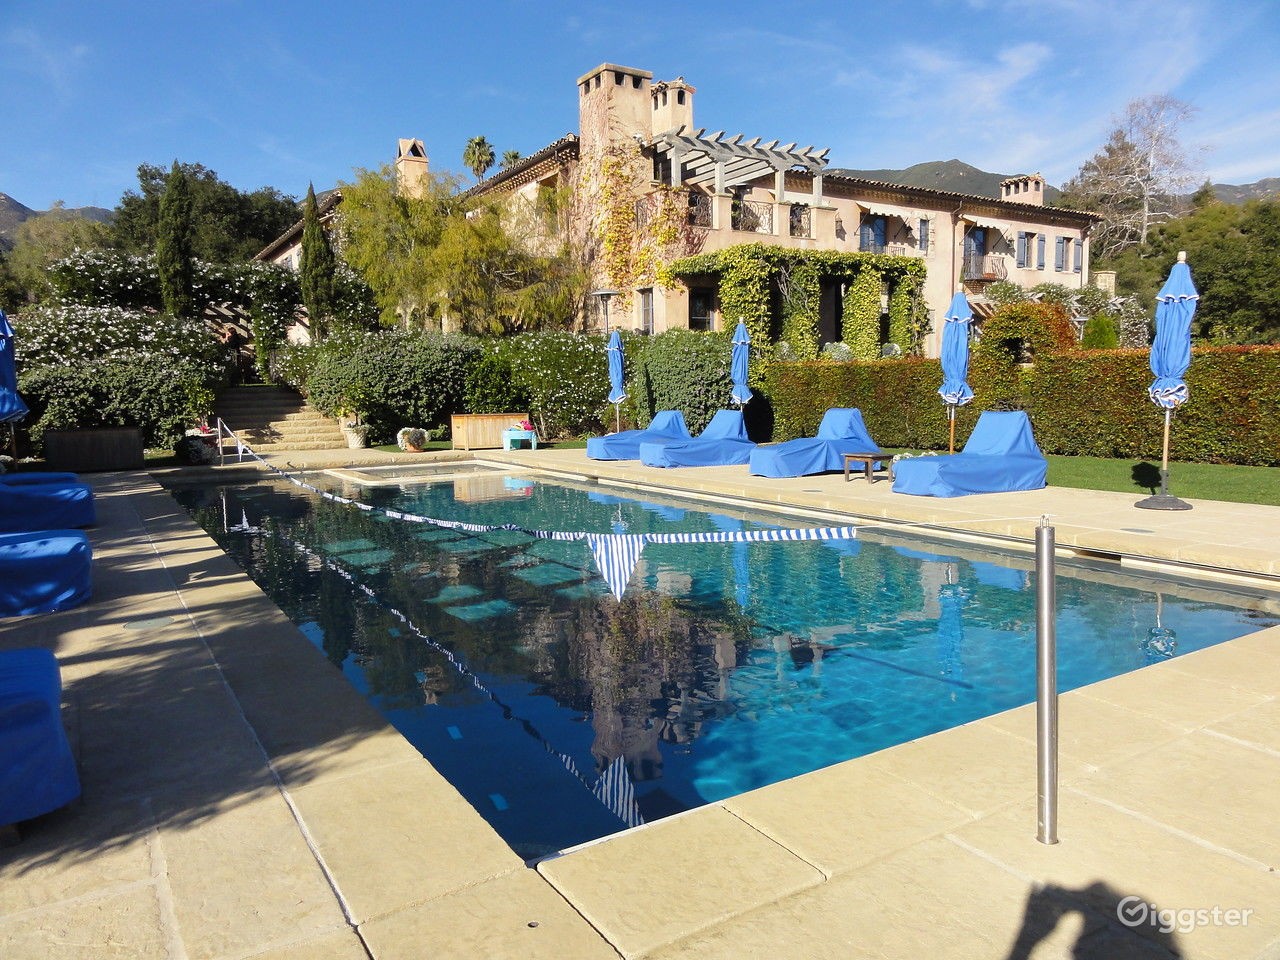 Em 2020, a mansão Montecito na Califórnia, de Harry e Meghan, foi listada para aluguel a US$ 700 por hora para sessões de fotos e videoclipes — Foto: Giggster / Divulgação